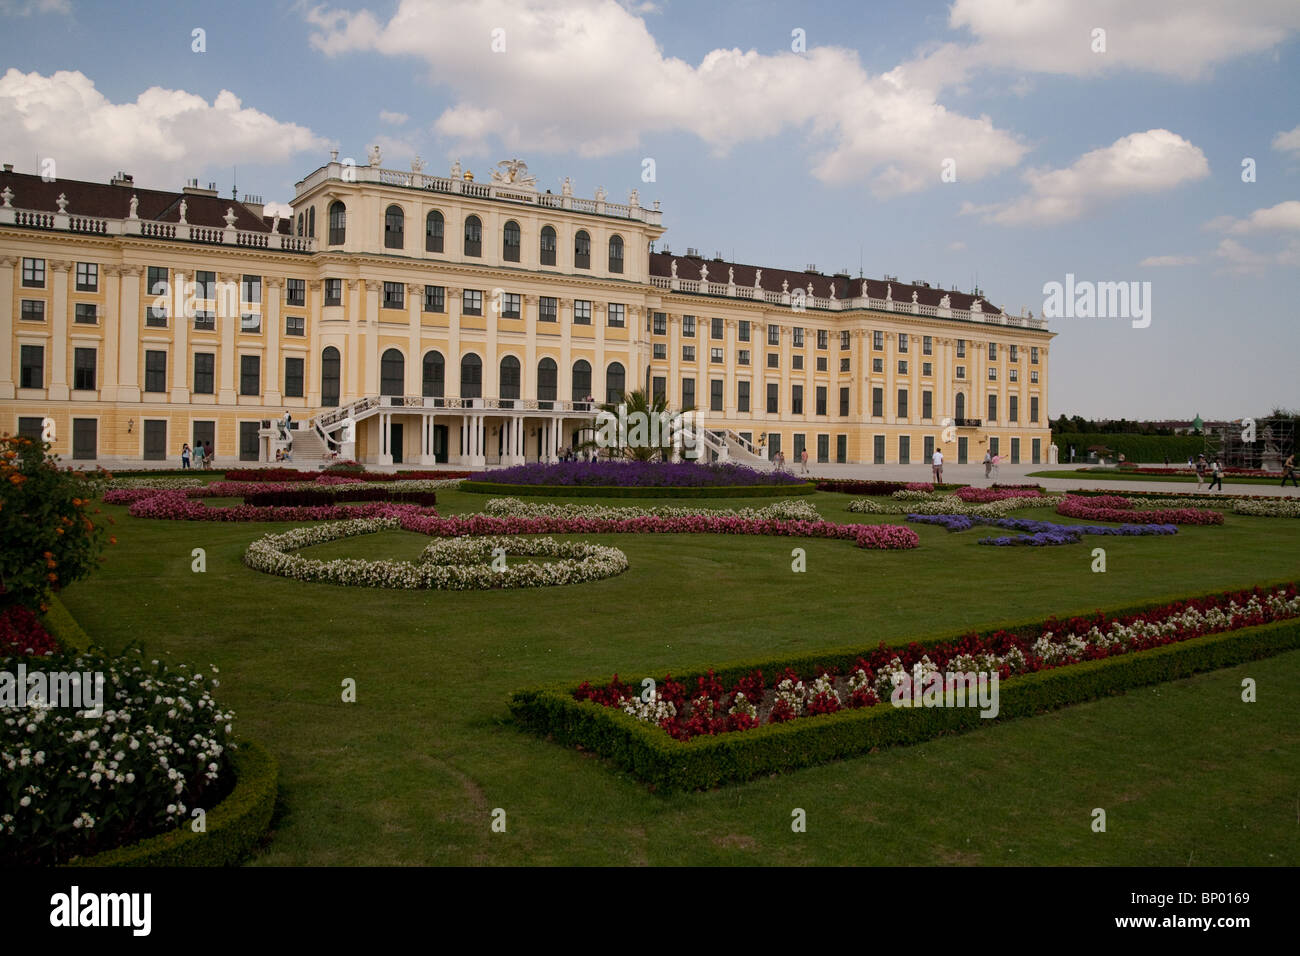 La parte trasera del palacio y jardines de Schönbrunn. Foto de stock